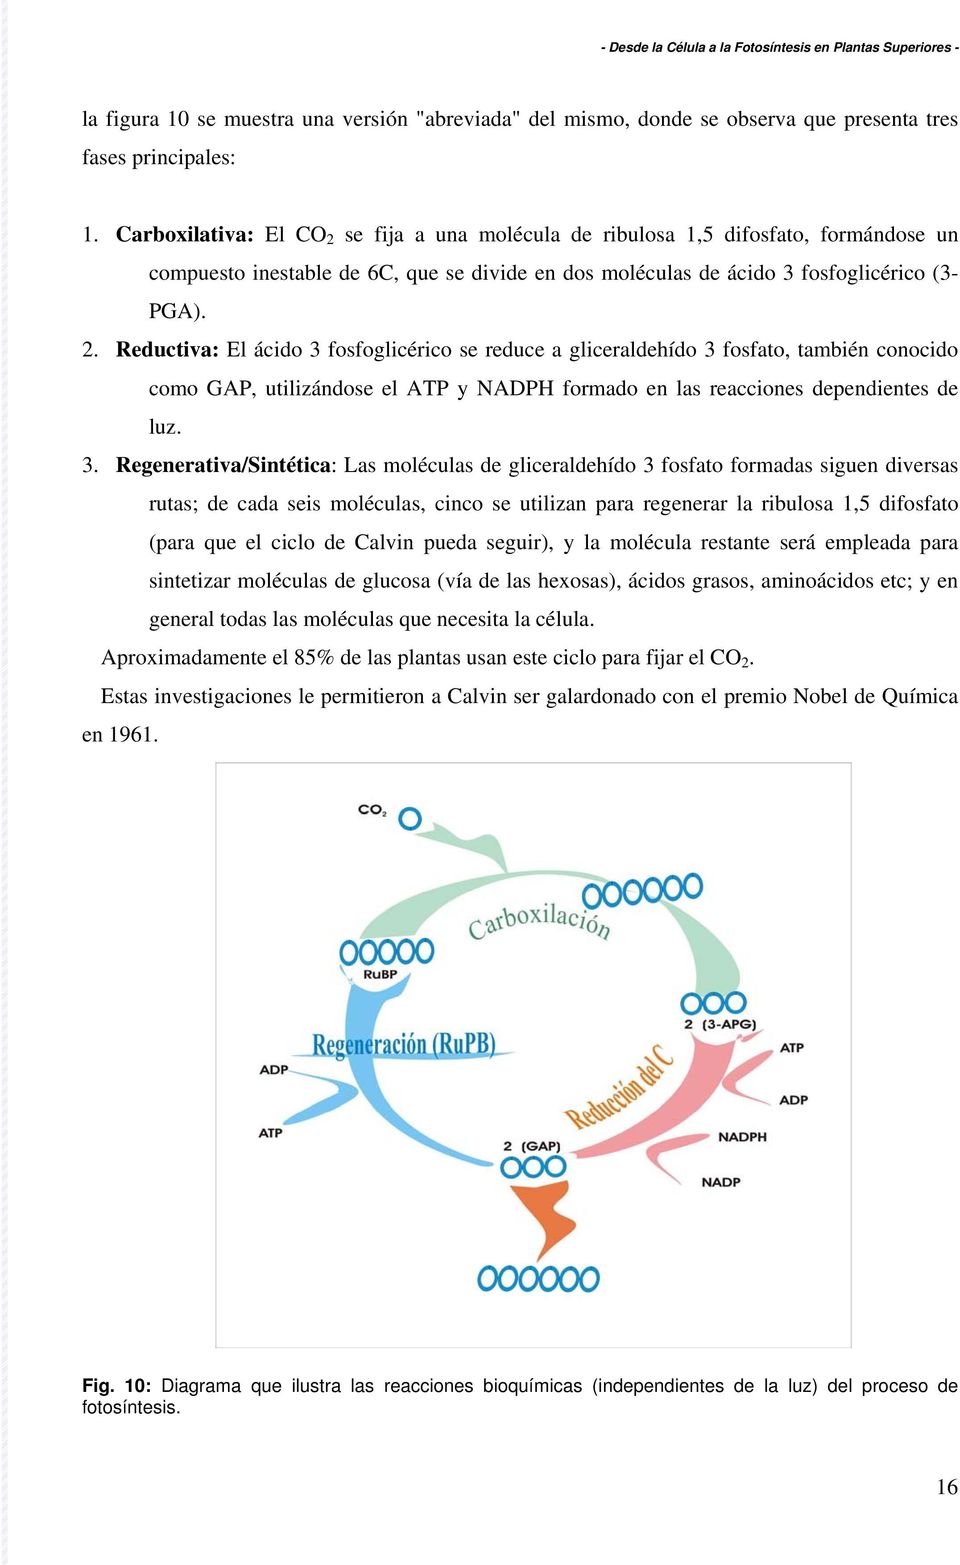 3. Regenerativa/Sintética: Las moléculas de gliceraldehído 3 fosfato formadas siguen diversas rutas; de cada seis moléculas, cinco se utilizan para regenerar la ribulosa 1,5 difosfato (para que el